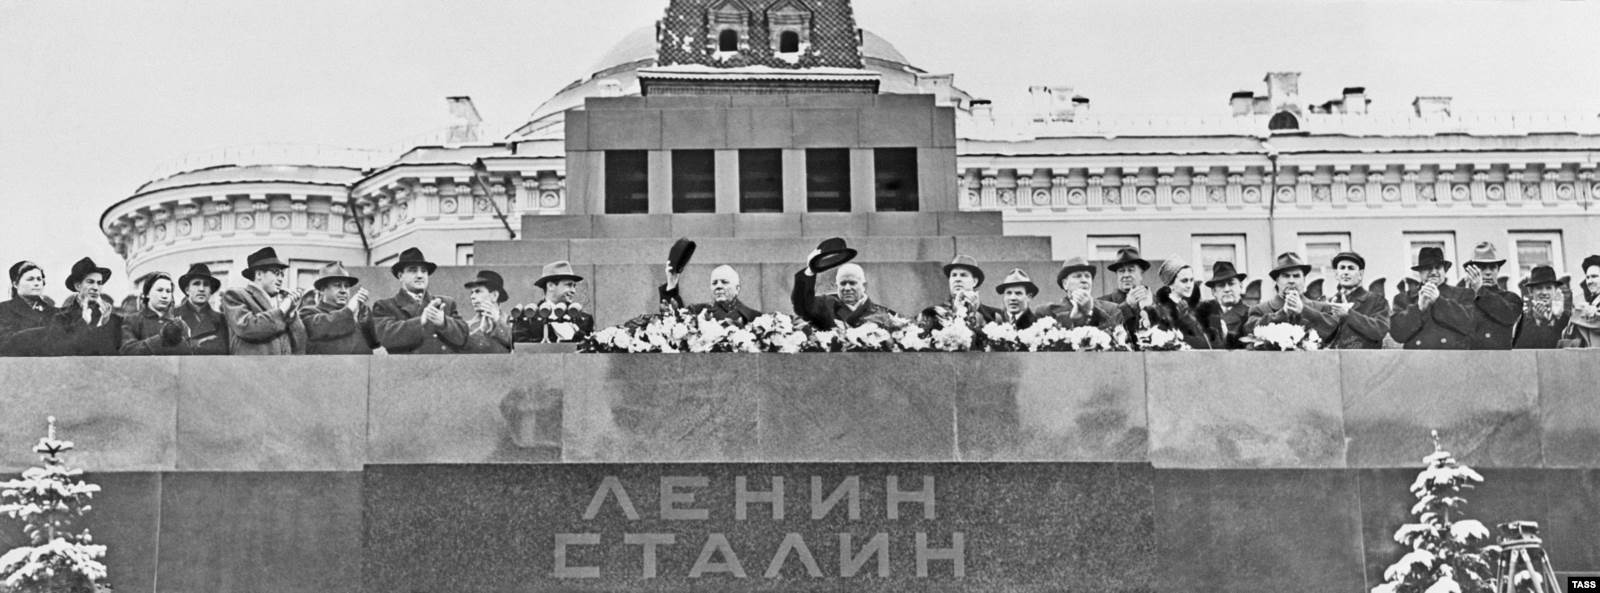 Мавзолей Ленина и Сталина в Москве. 1958 год